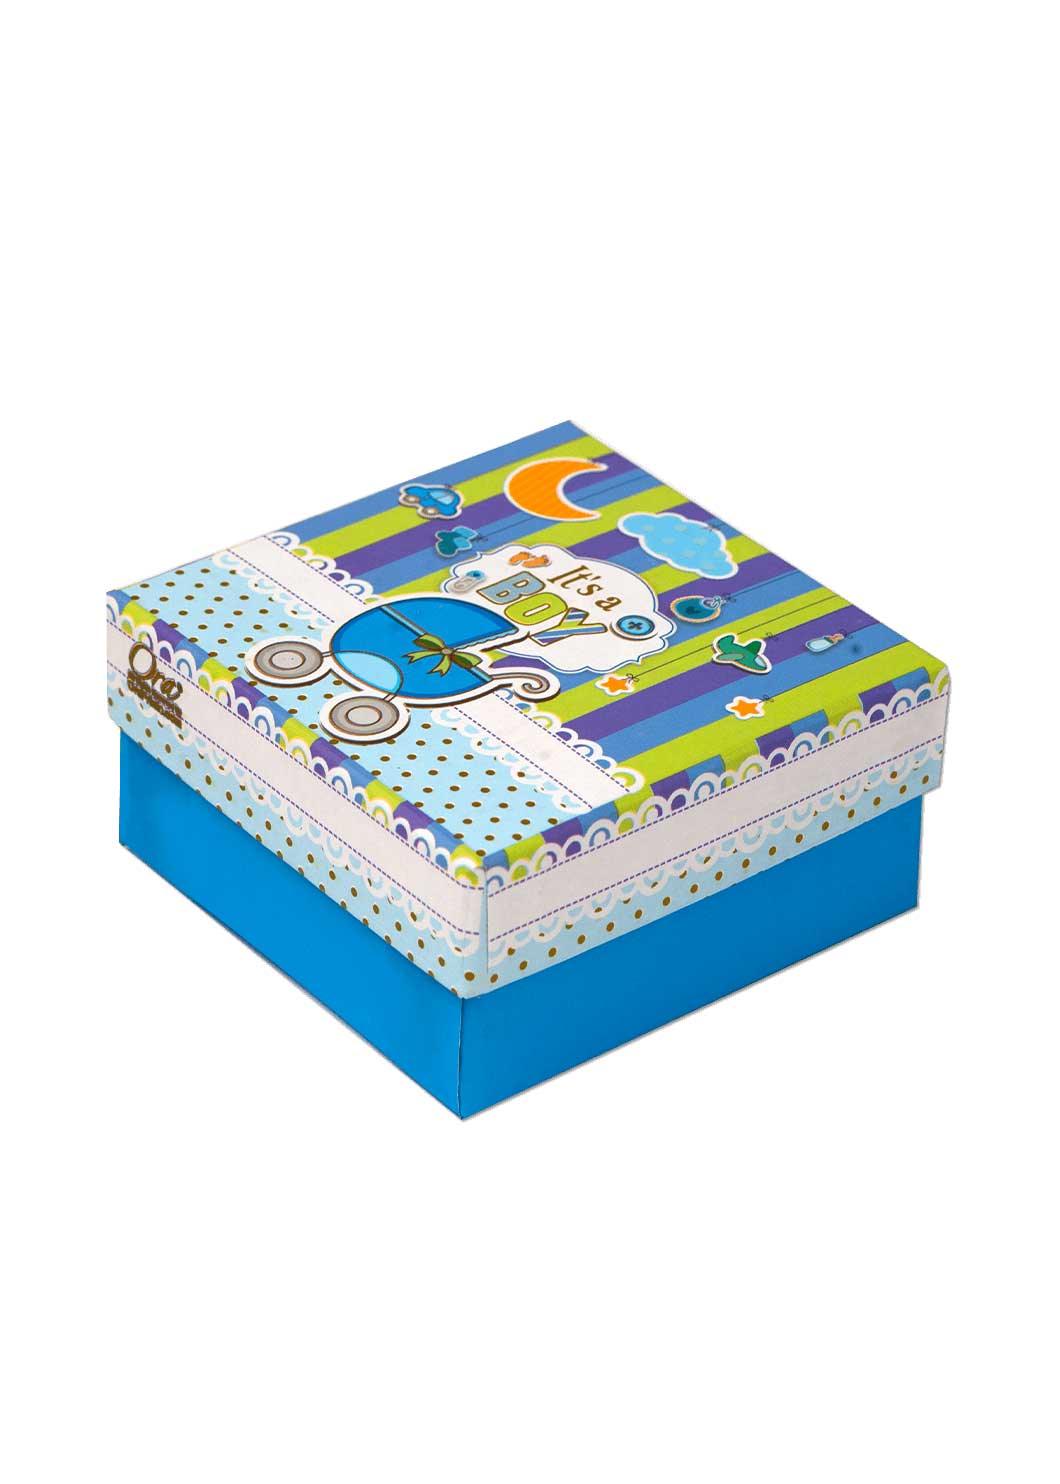 Qute Gift Box - Baby Gift store! Baby gift basket – QuteGiftBox